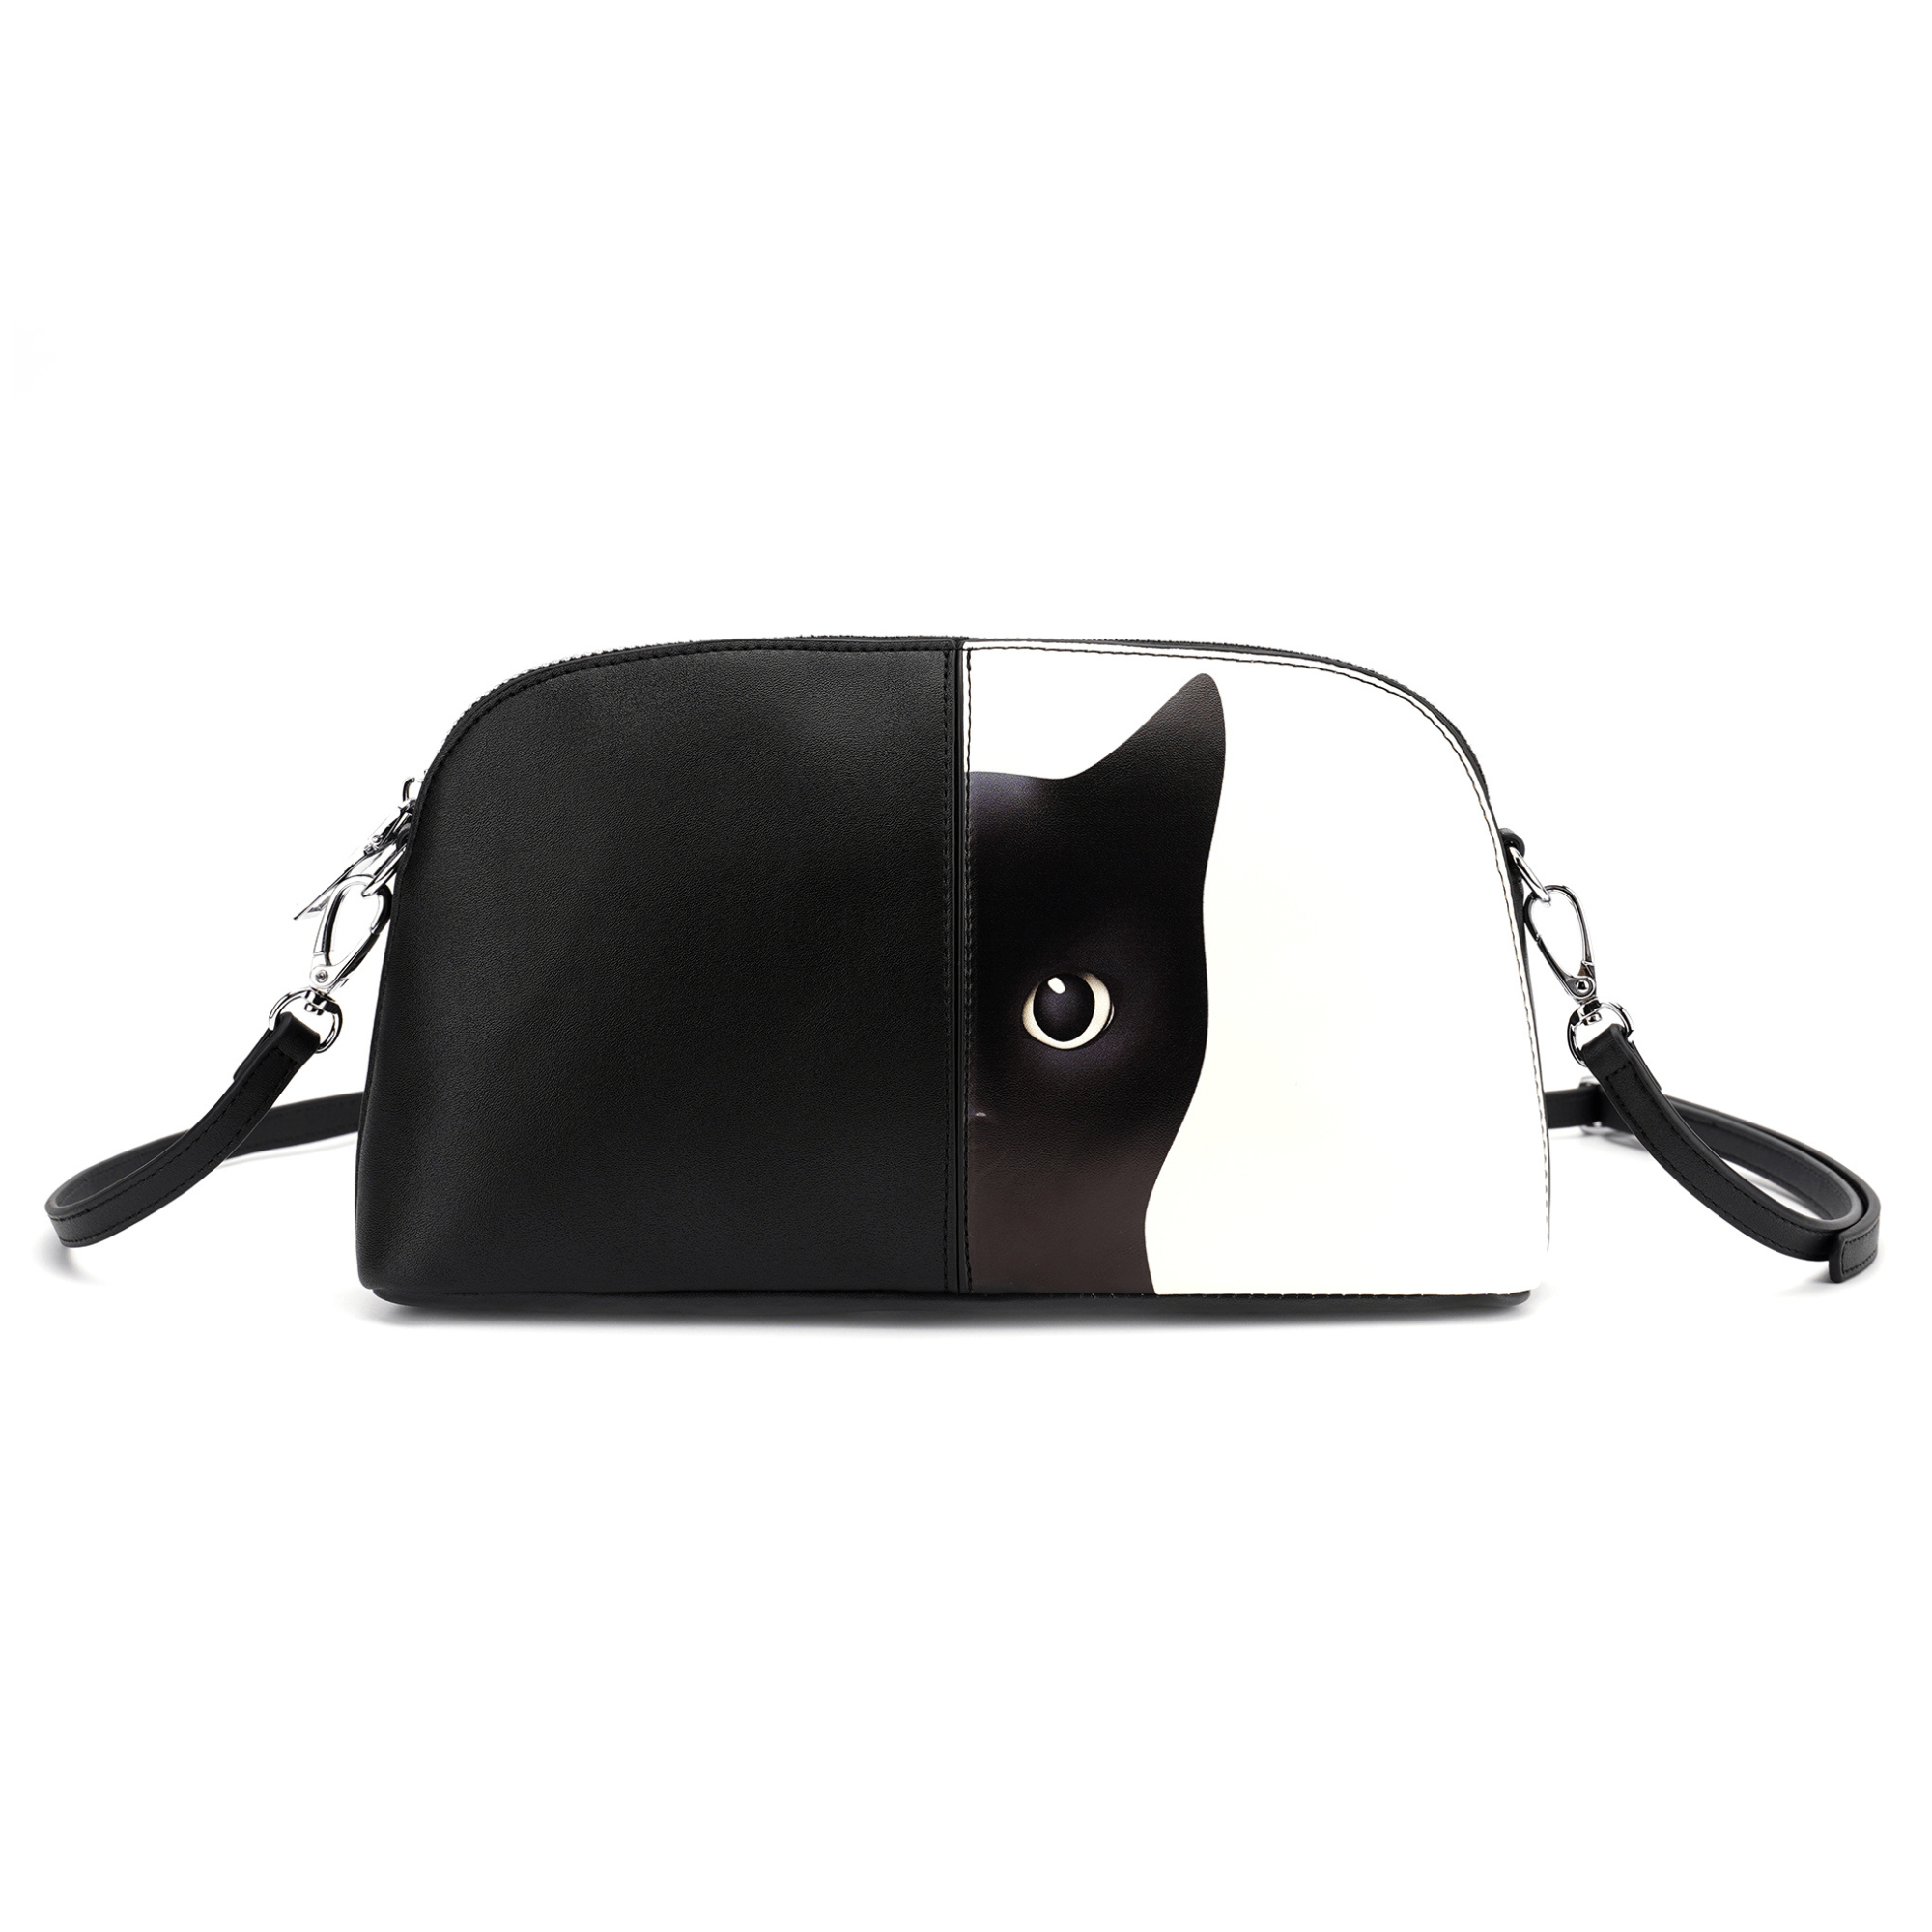 triple t studios handbags wallets black mercy black cat shoulder bag